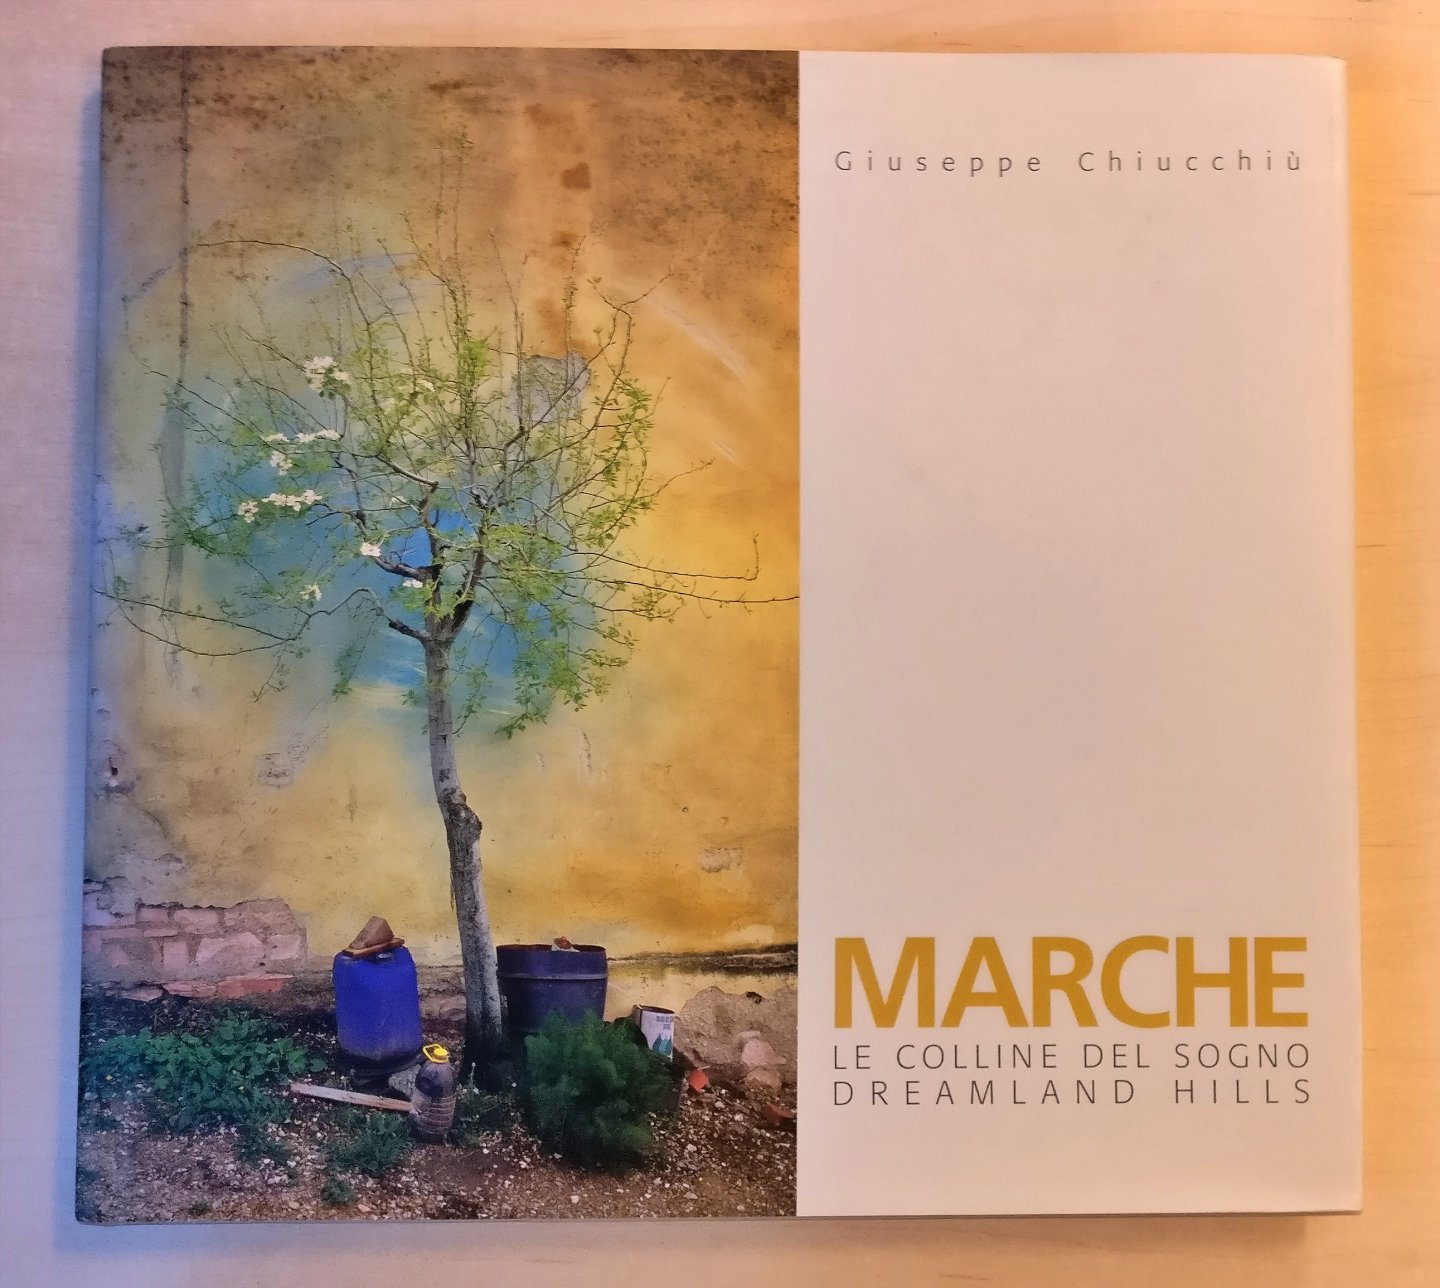 Giuseppe Chiucchiu - Marche - Le Colline del Sogno - Dreamland Hills